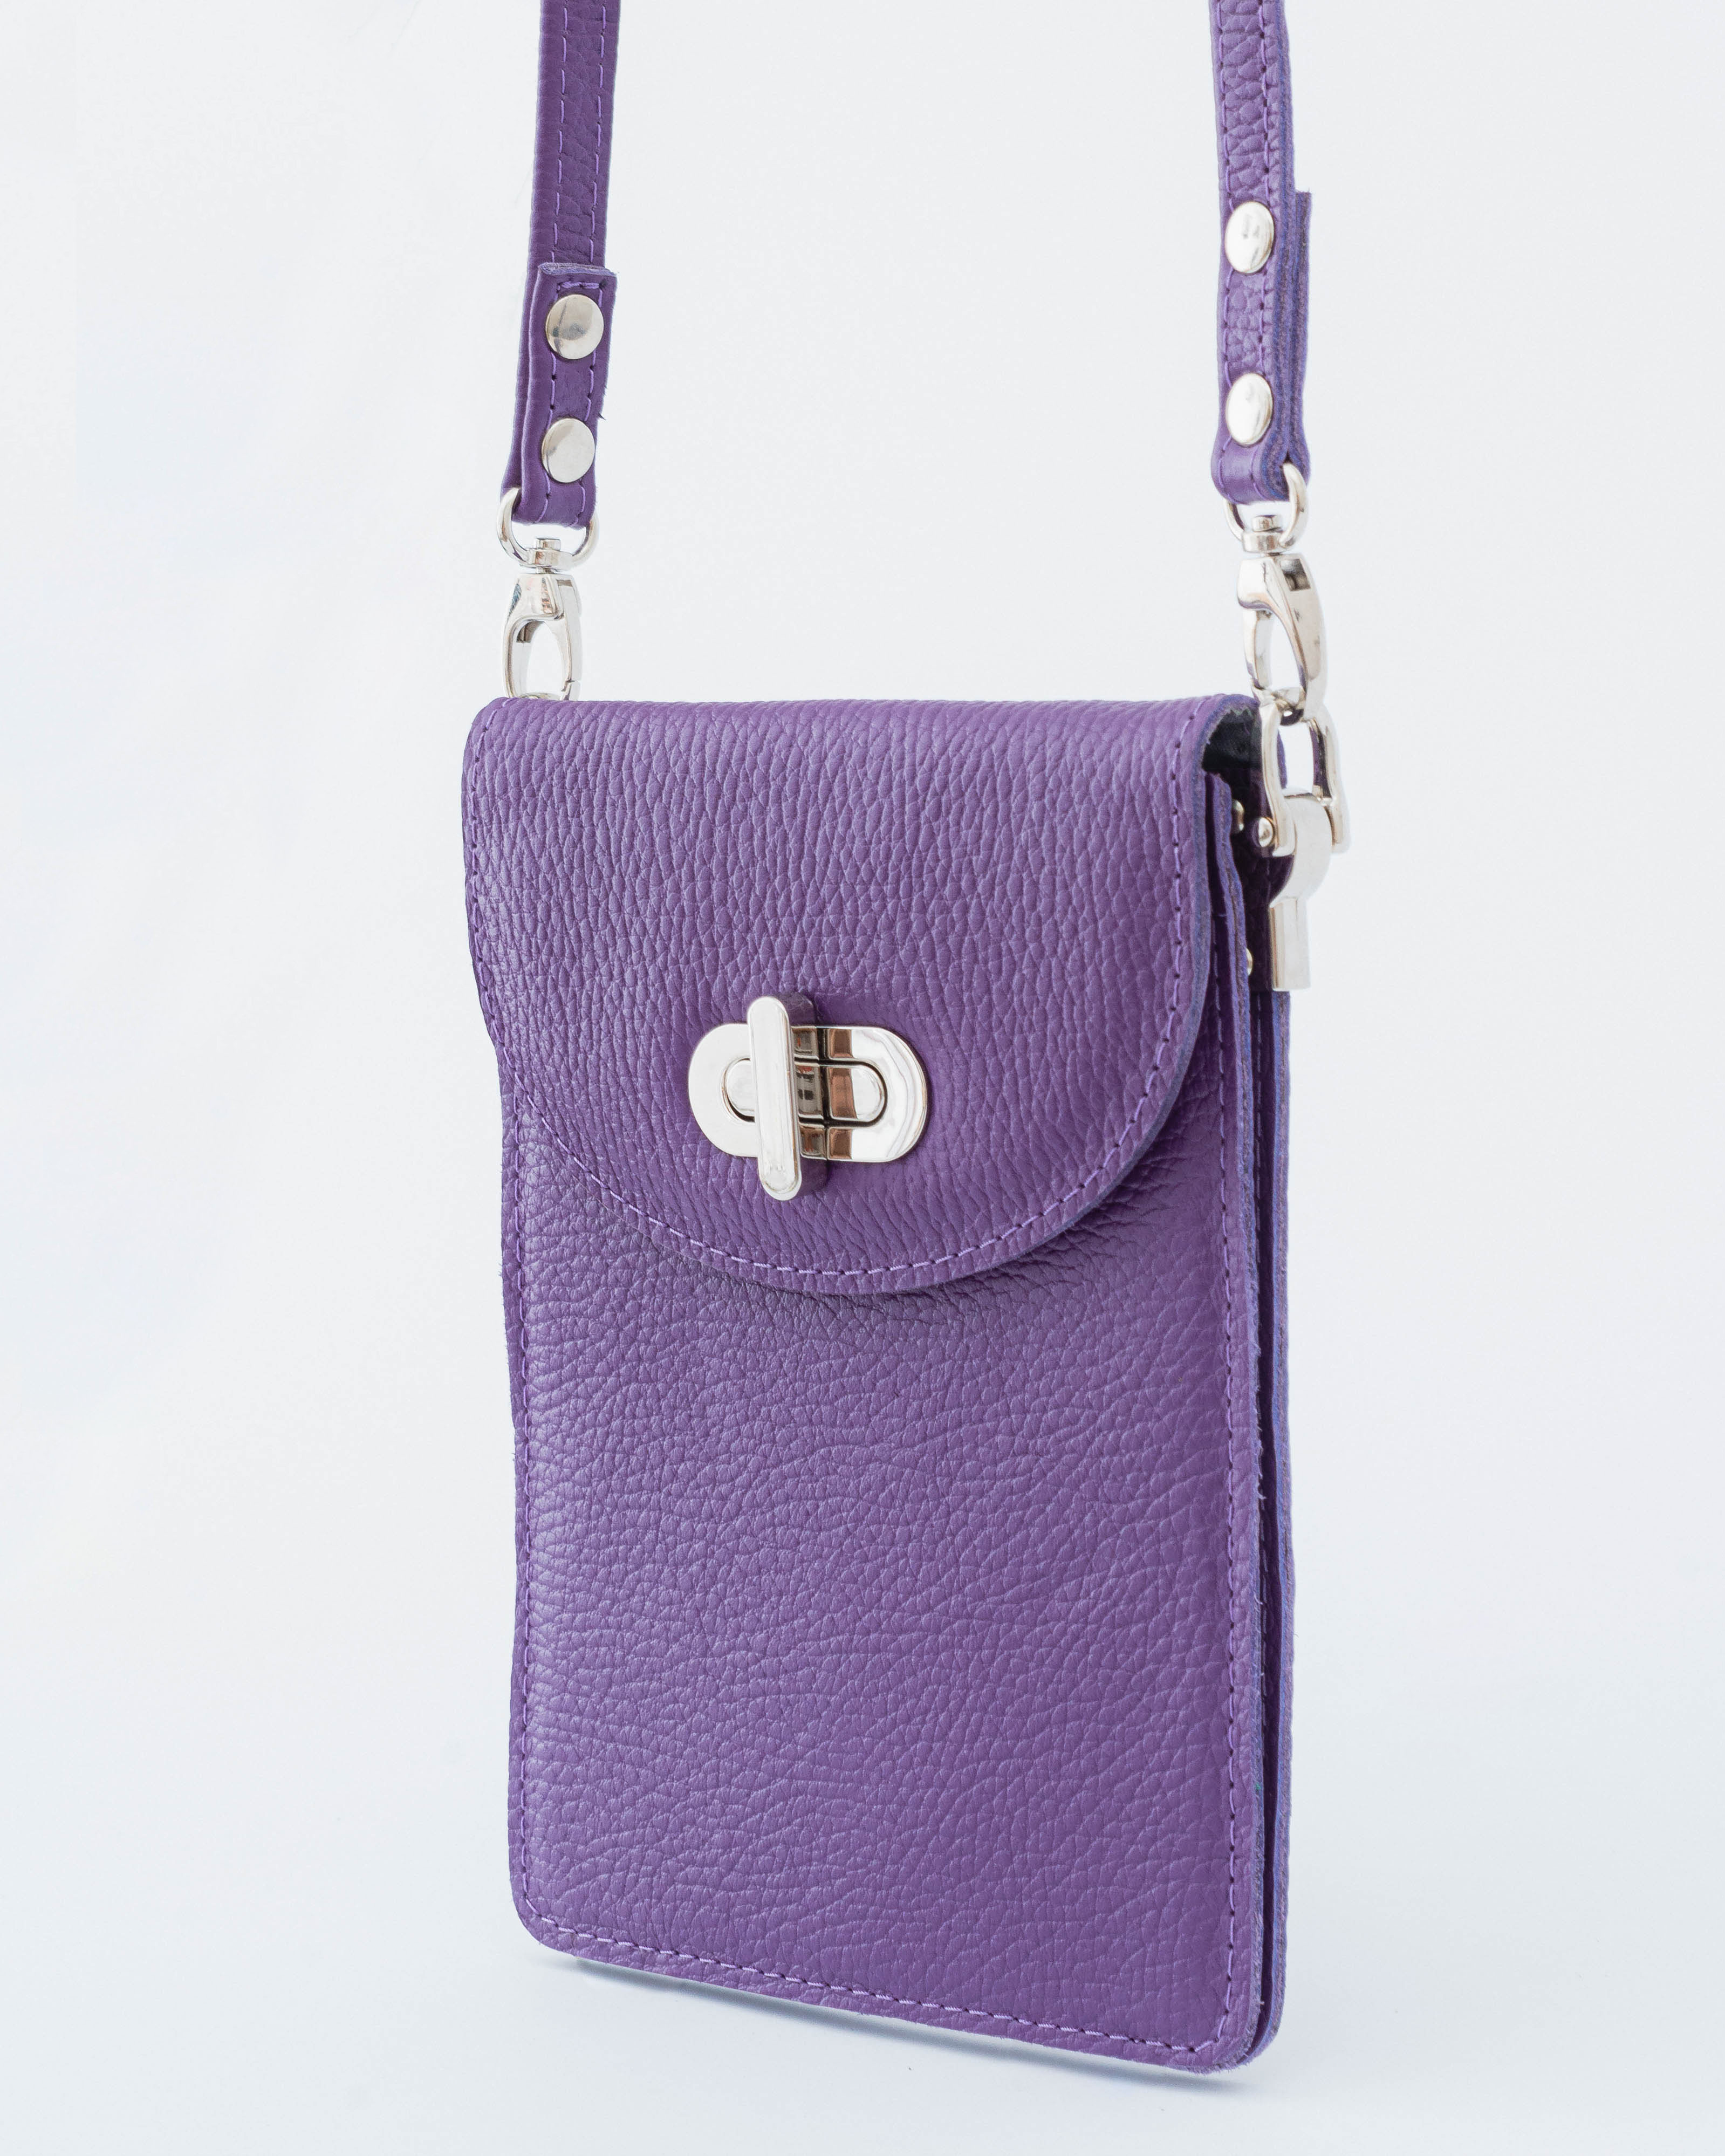 Сумка кросс-боди женская Leather Collection LC-KLG-621С, фиолетовый